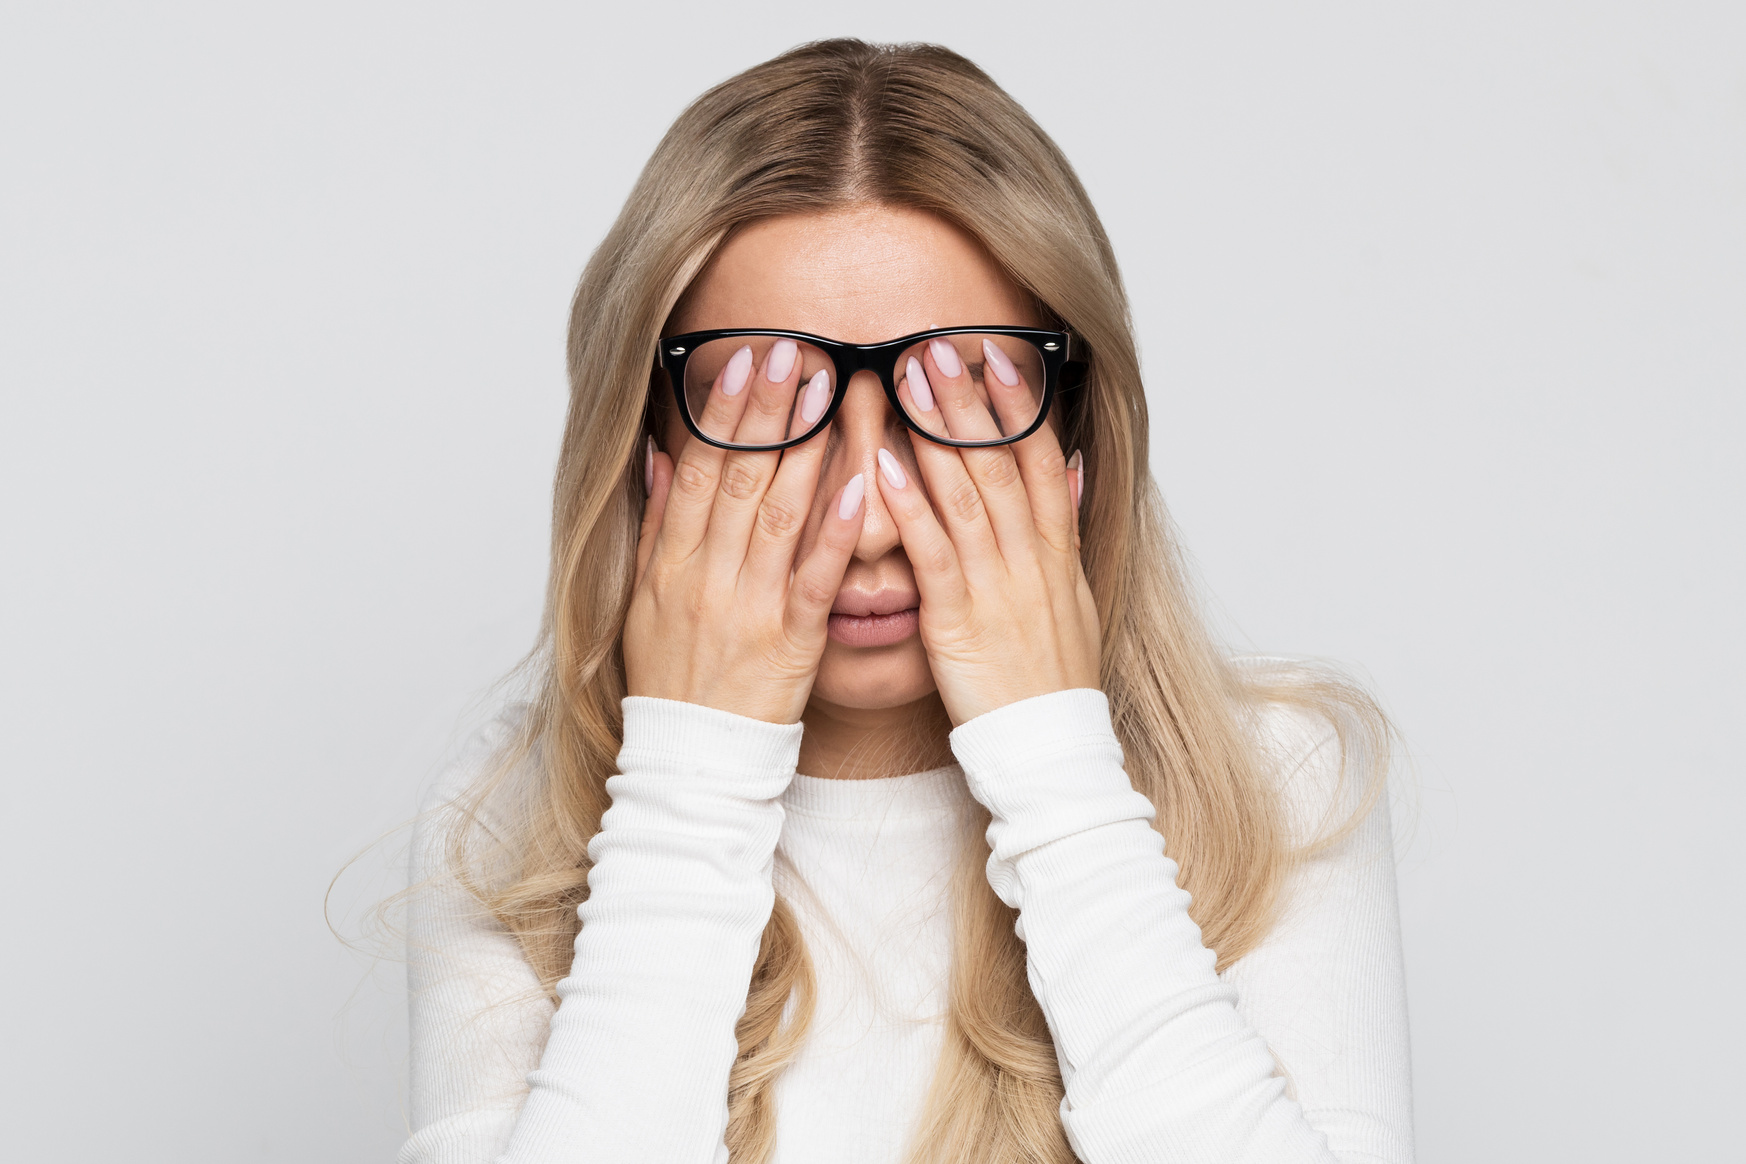 Woman in Eyeglasses Rubbing Her Eyes